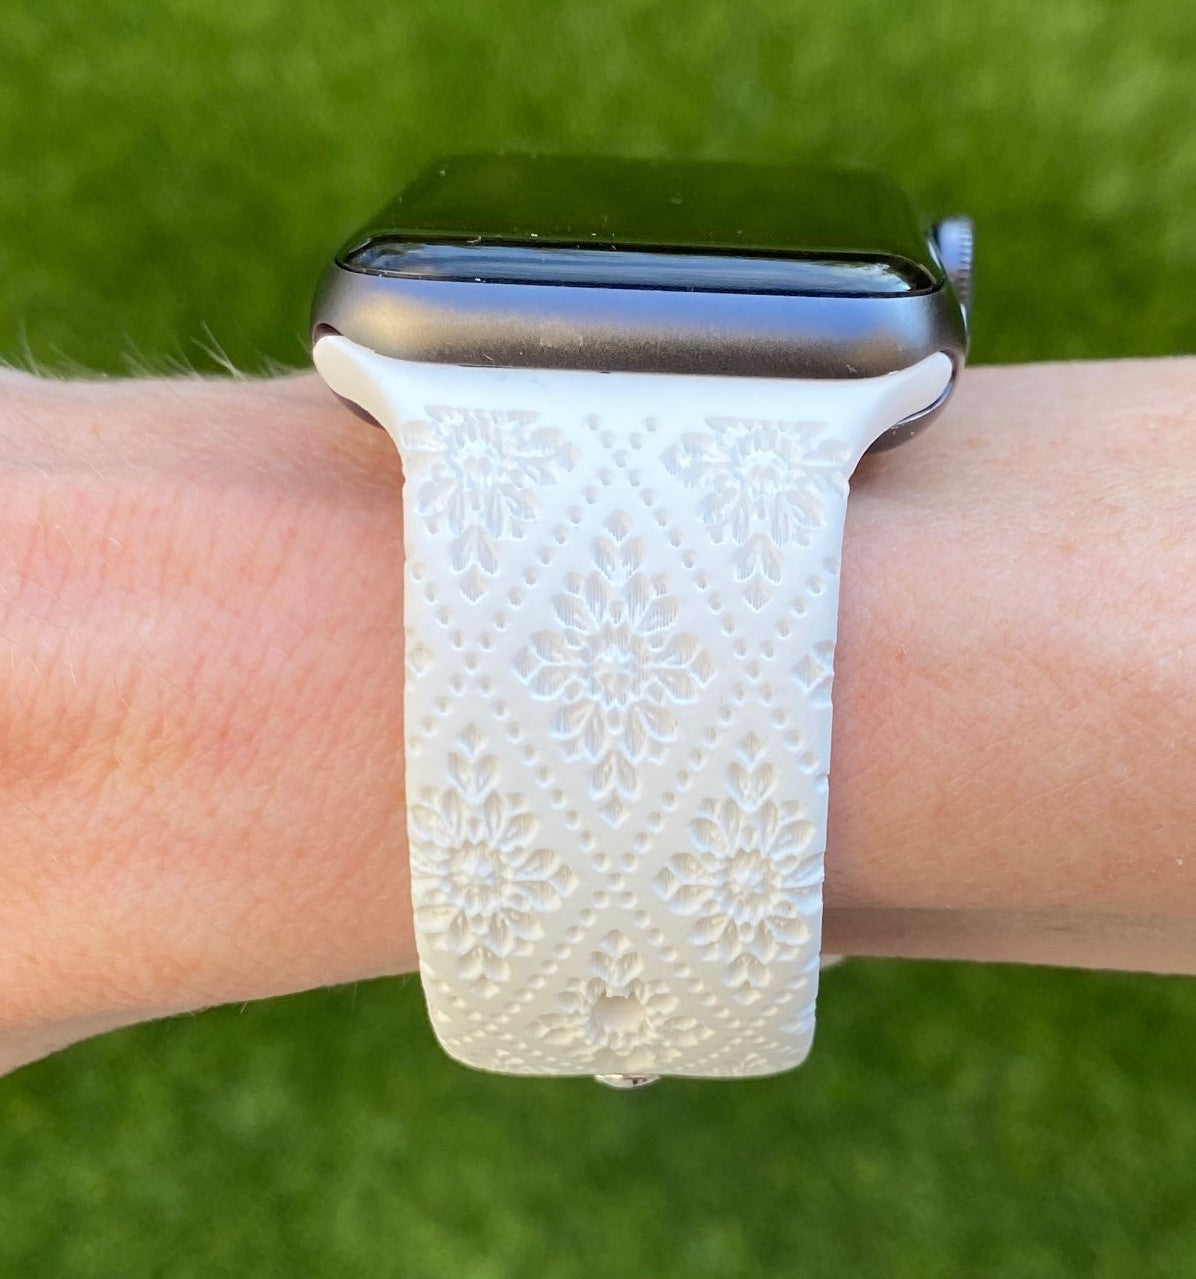 Fancy Lace Apple Watch Band